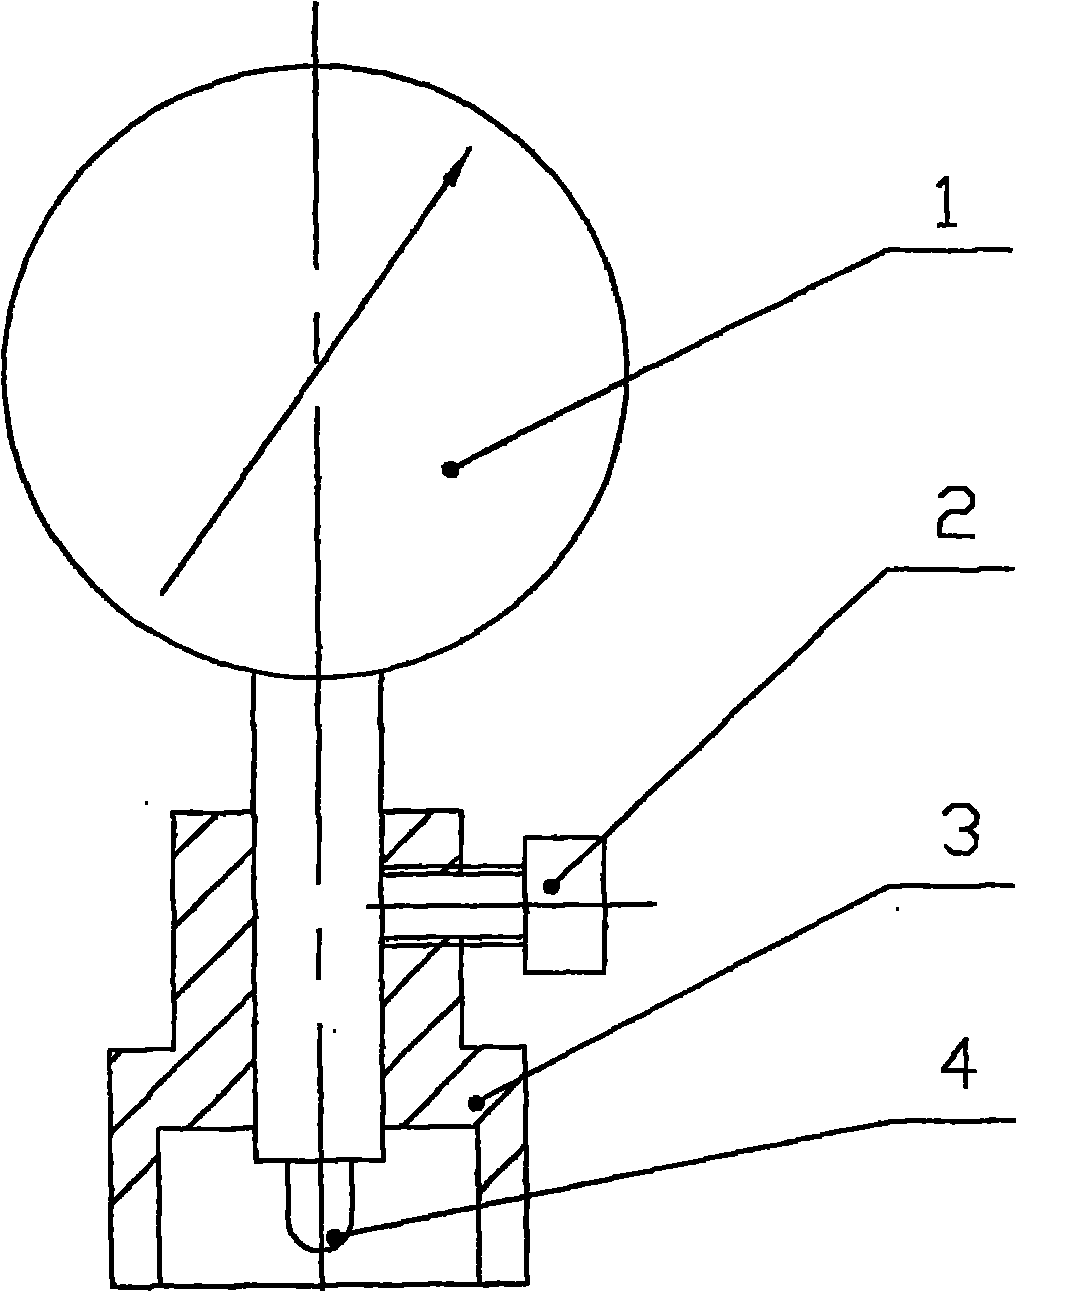 Method for measuring rough machining curvature radius of sapphire concave and convex lenses